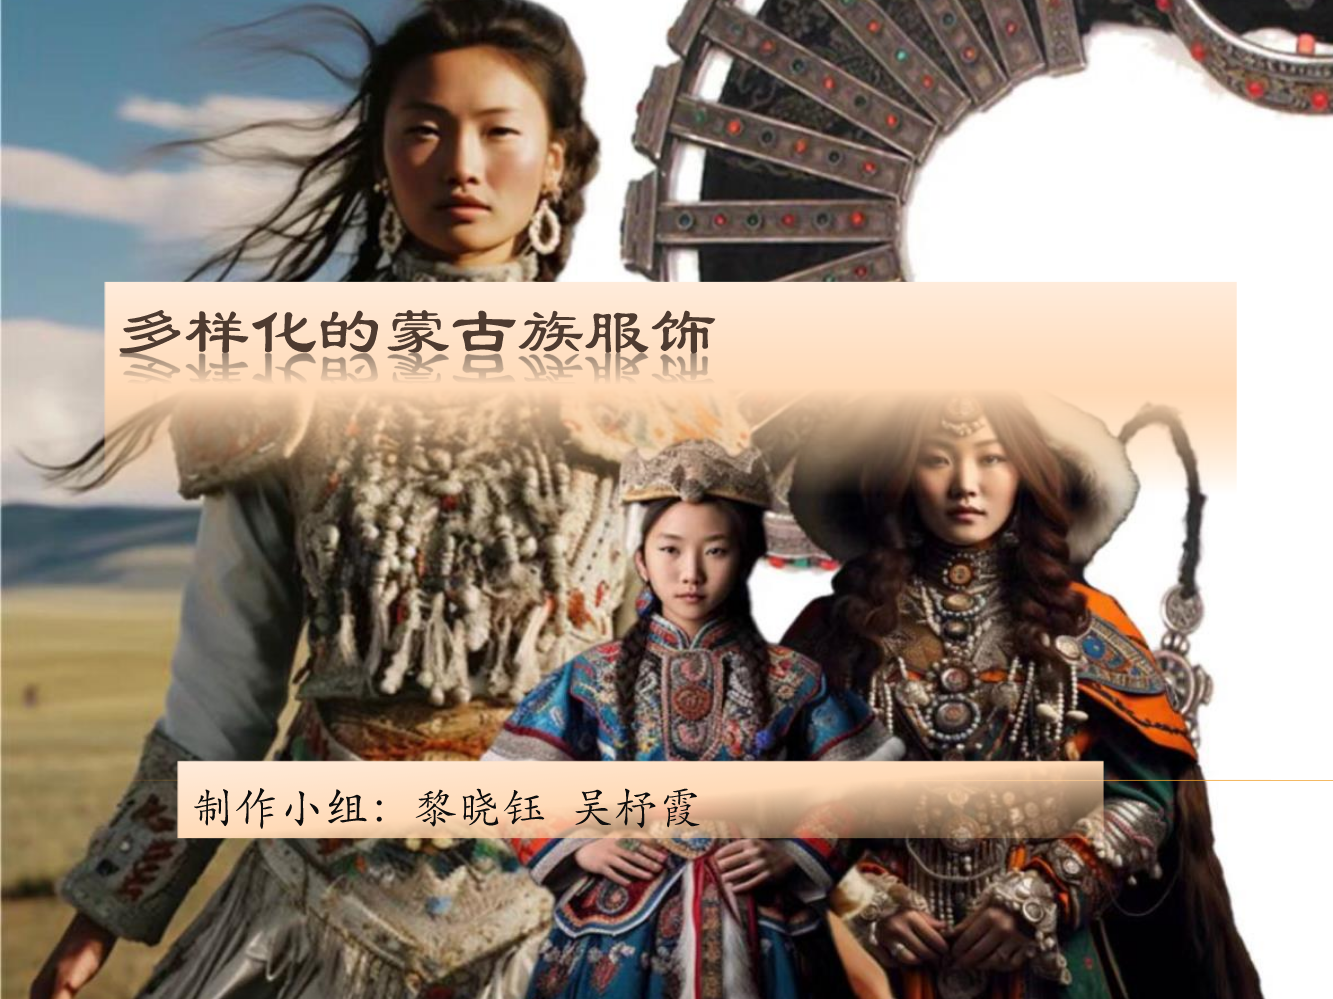 多样化的蒙古族服饰  制作小组：黎晓钰 吴杼霞